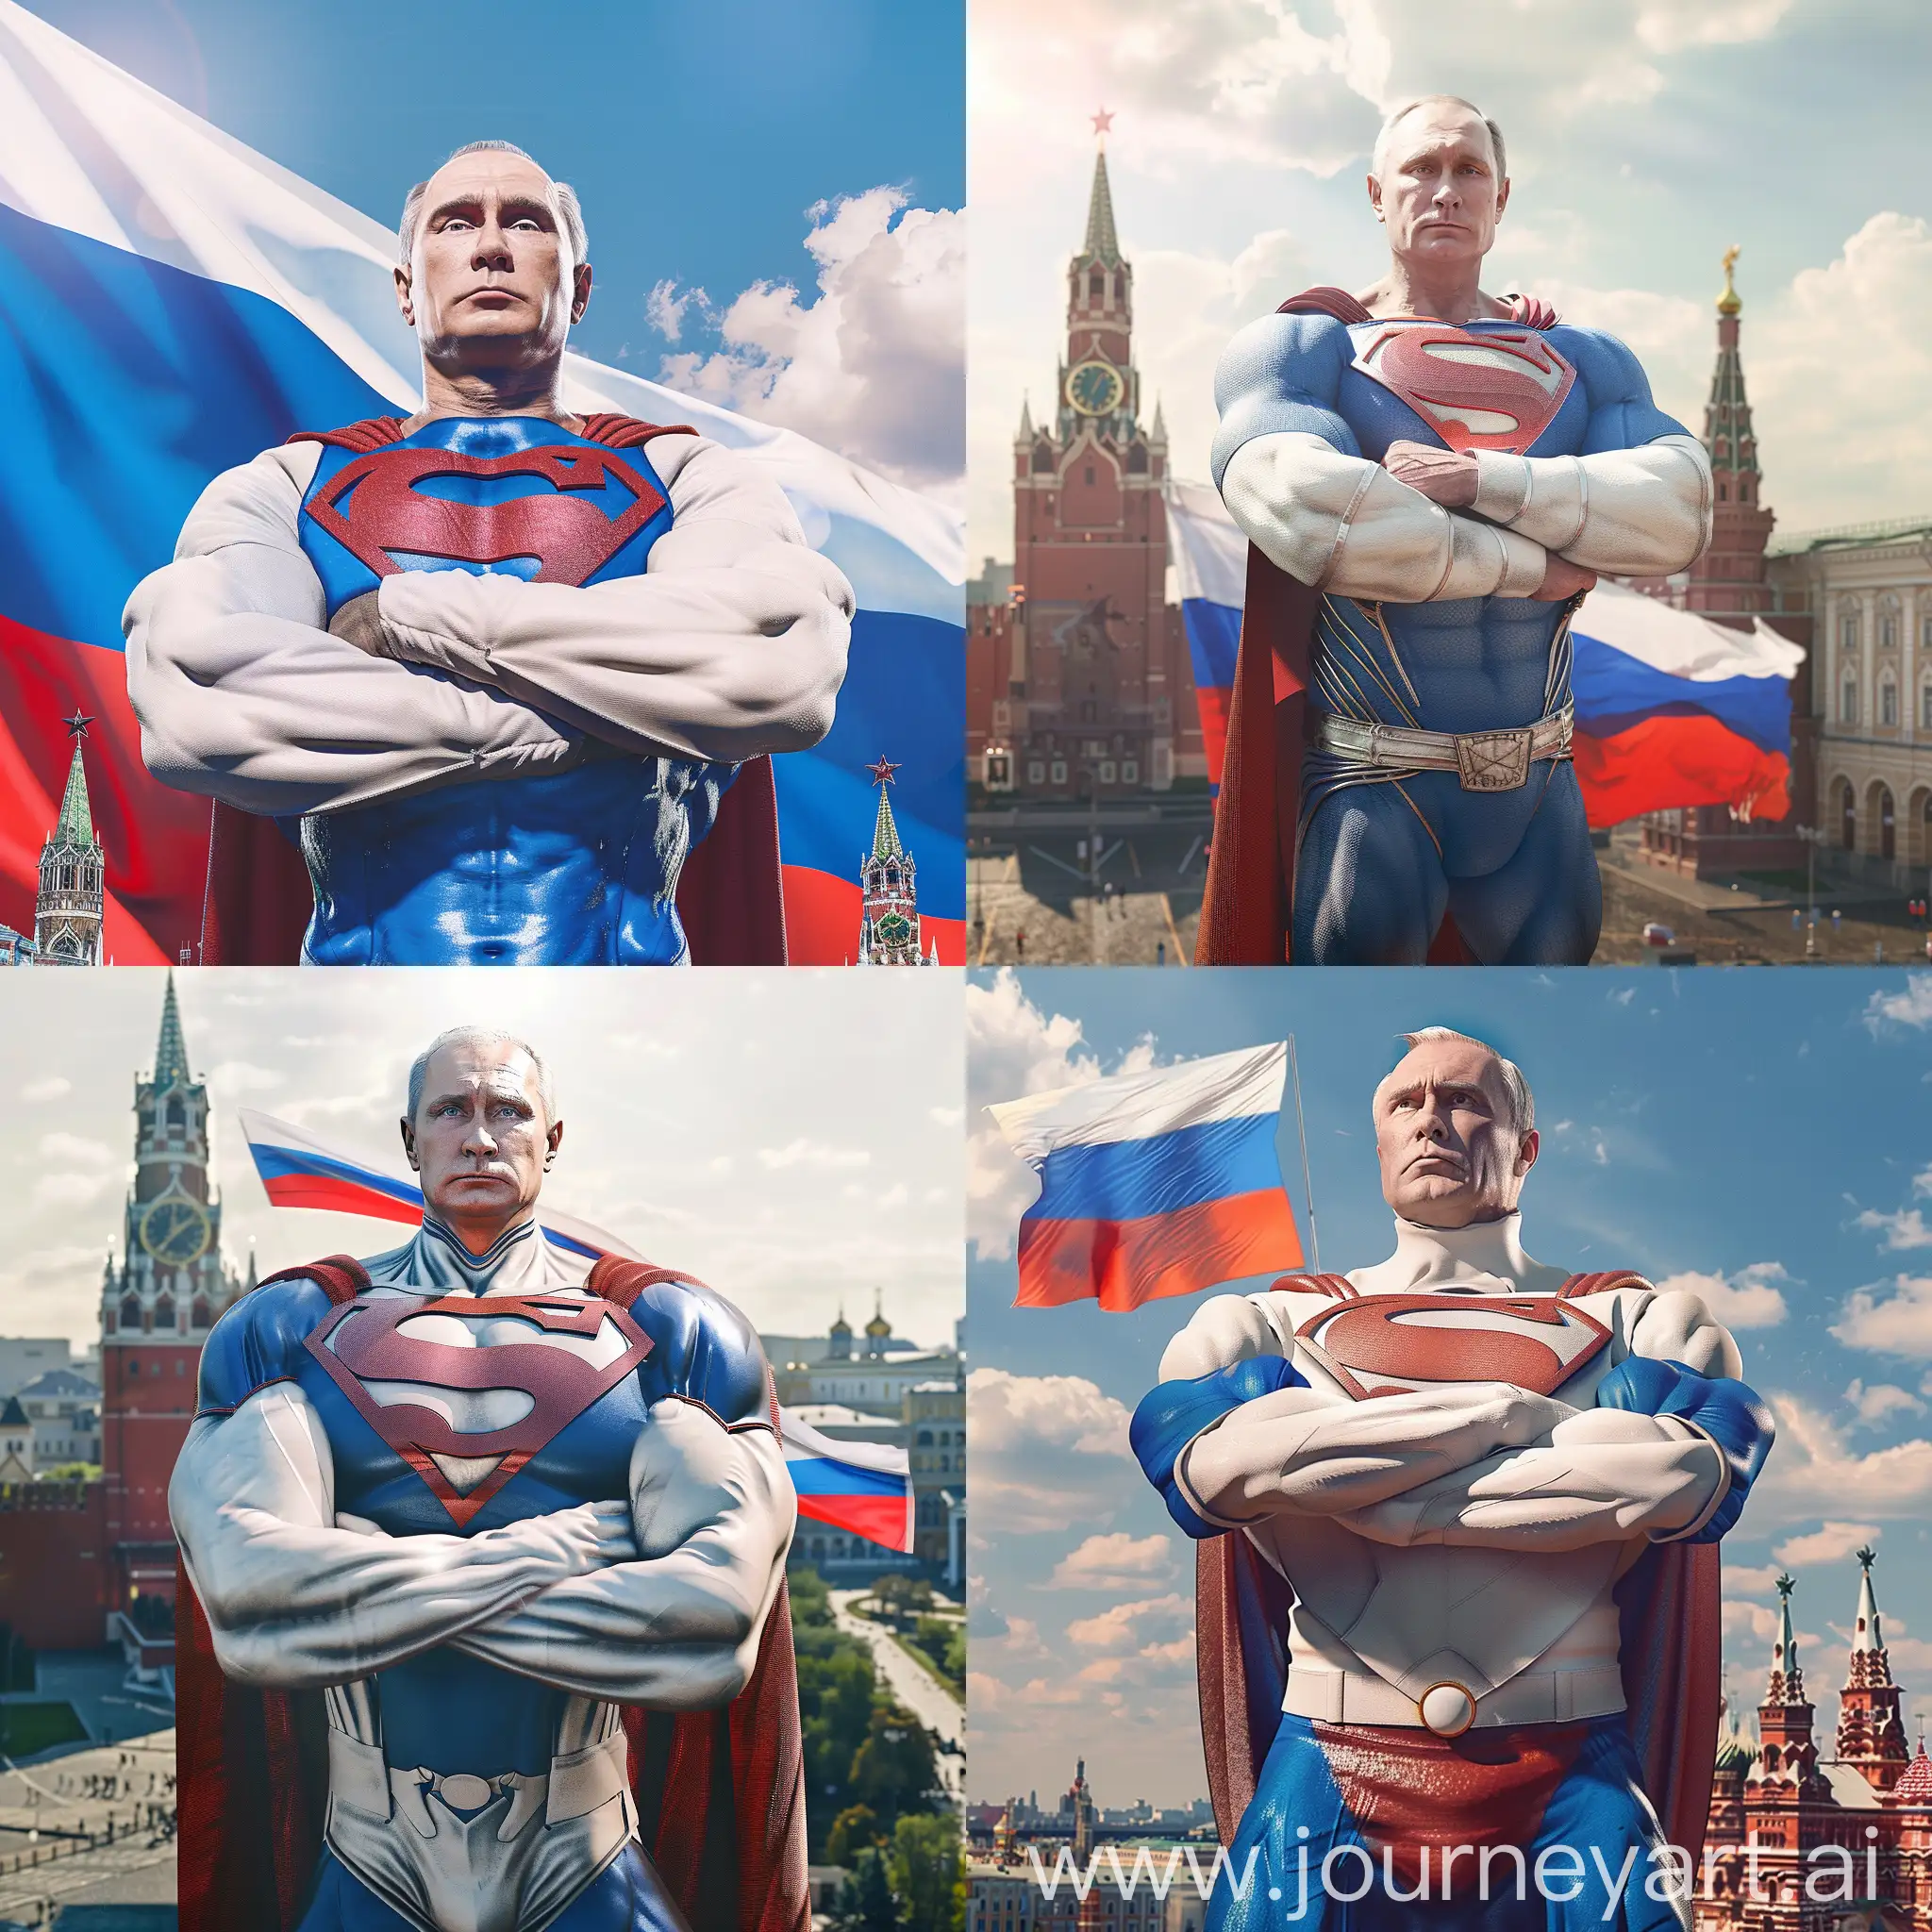 Мускулистый Владимир Путин в костюме супермена в белой синей и красной расцветке, стоит над Красной площадью скрестив руки, эстетично, красиво, реалистично, профессиональное фото, 4k, высокое разрешение, высокая детализация, флаг россии